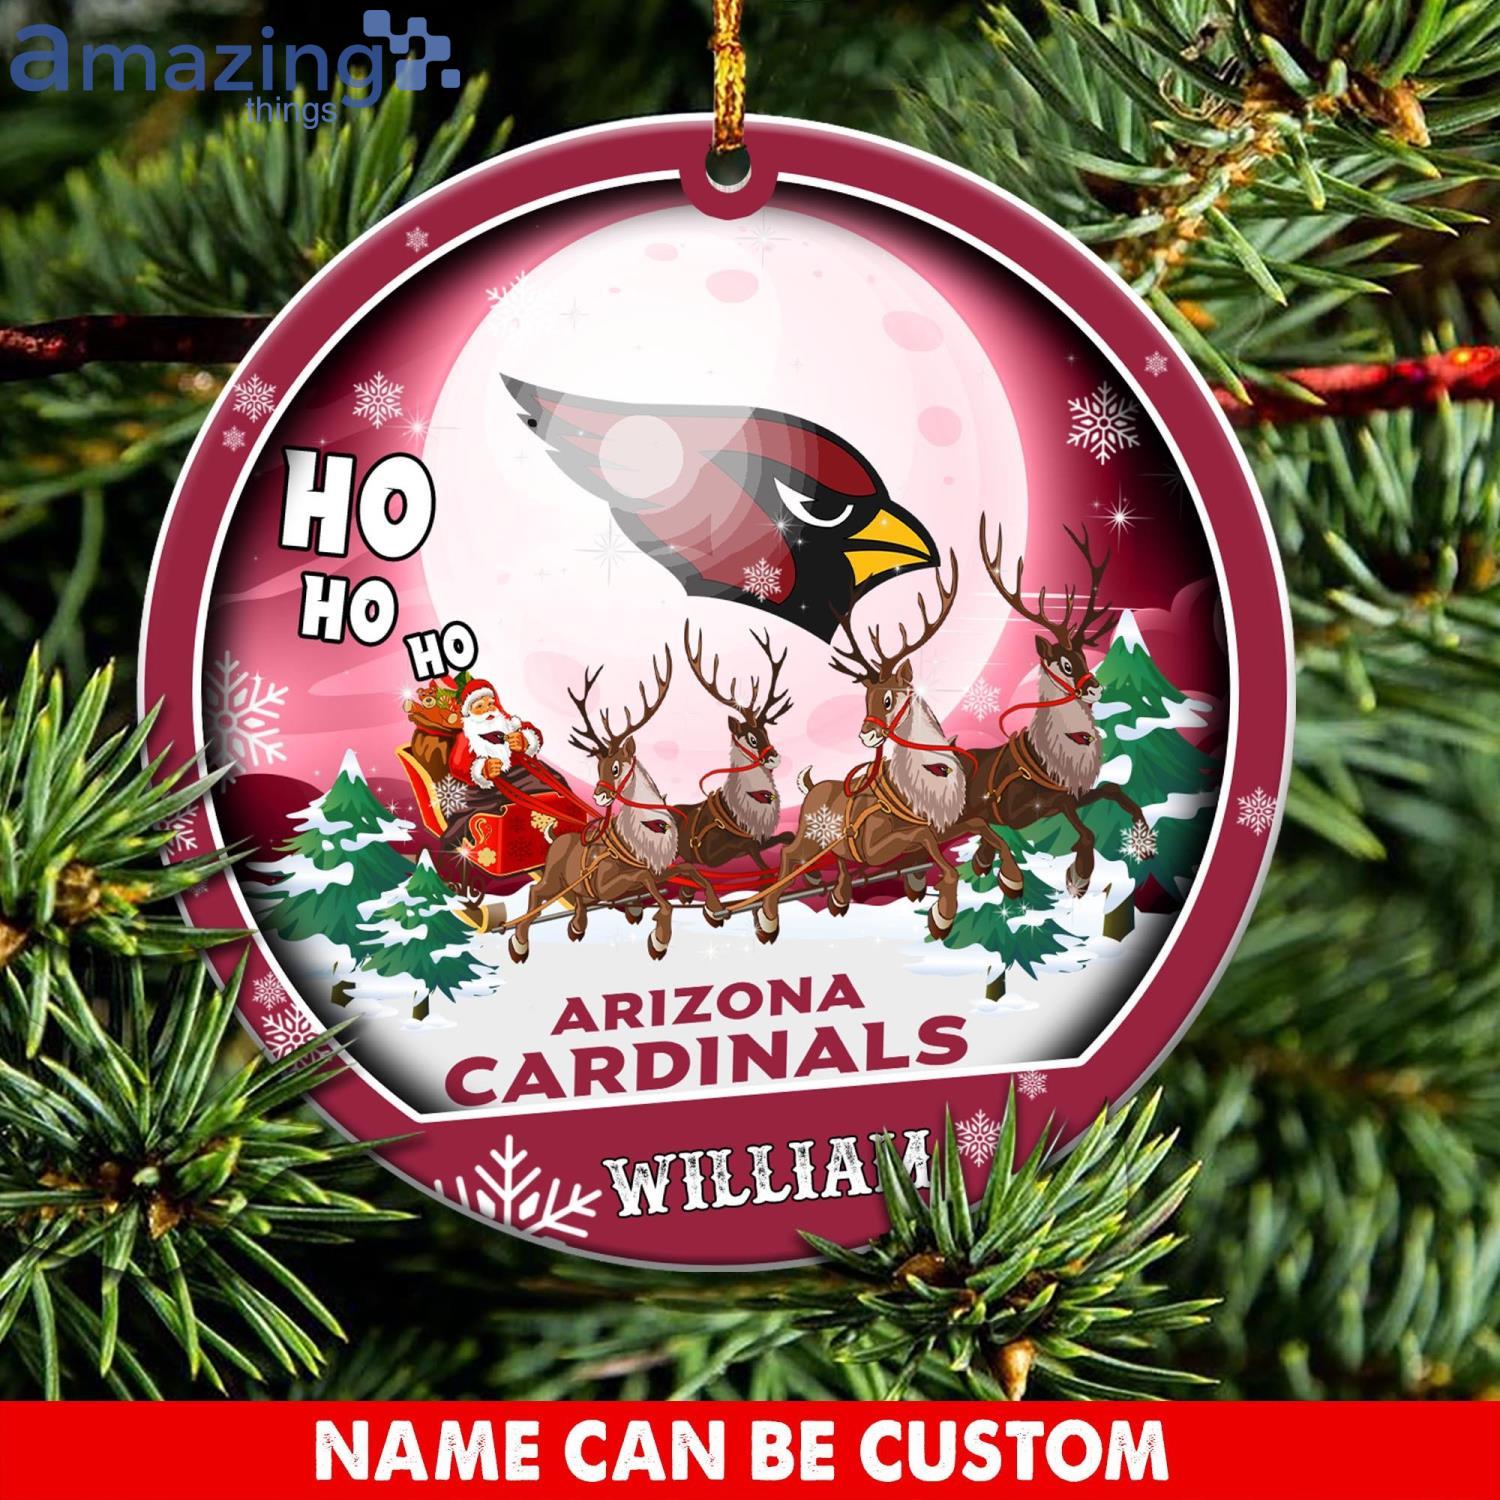 Arizona Cardinals Ho Ho Ho Santa's Reindeer  NFL Christmas Ornaments Custom Name Product Photo 1